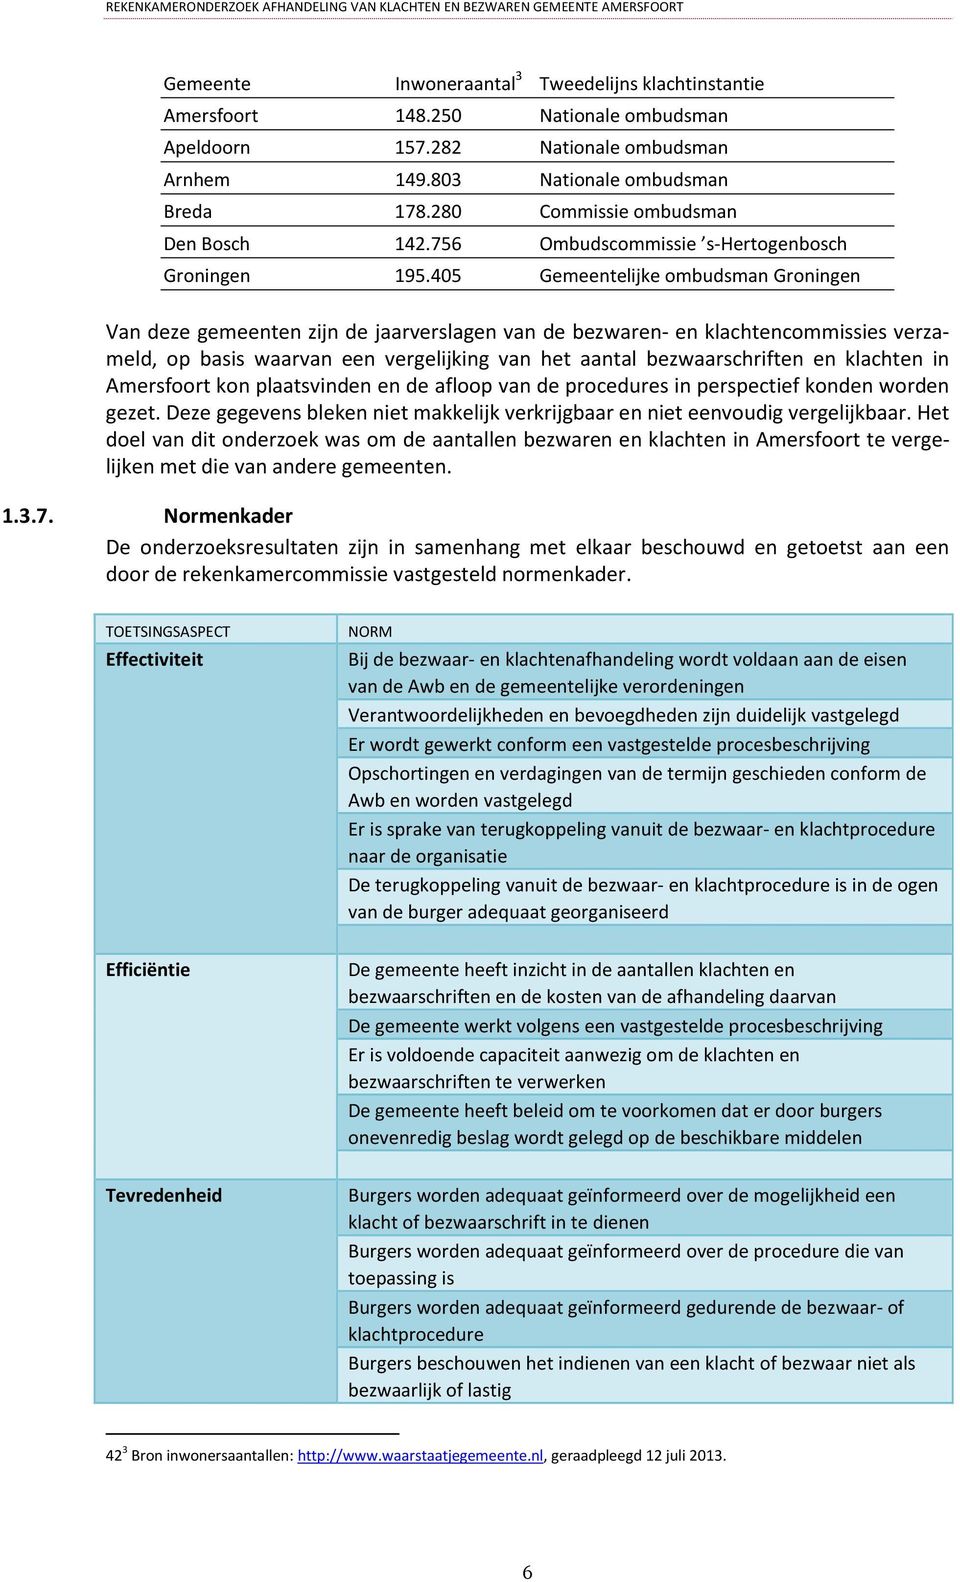 405 Gemeentelijke ombudsman Groningen Van deze gemeenten zijn de jaarverslagen van de bezwaren- en klachtencommissies verzameld, op basis waarvan een vergelijking van het aantal bezwaarschriften en